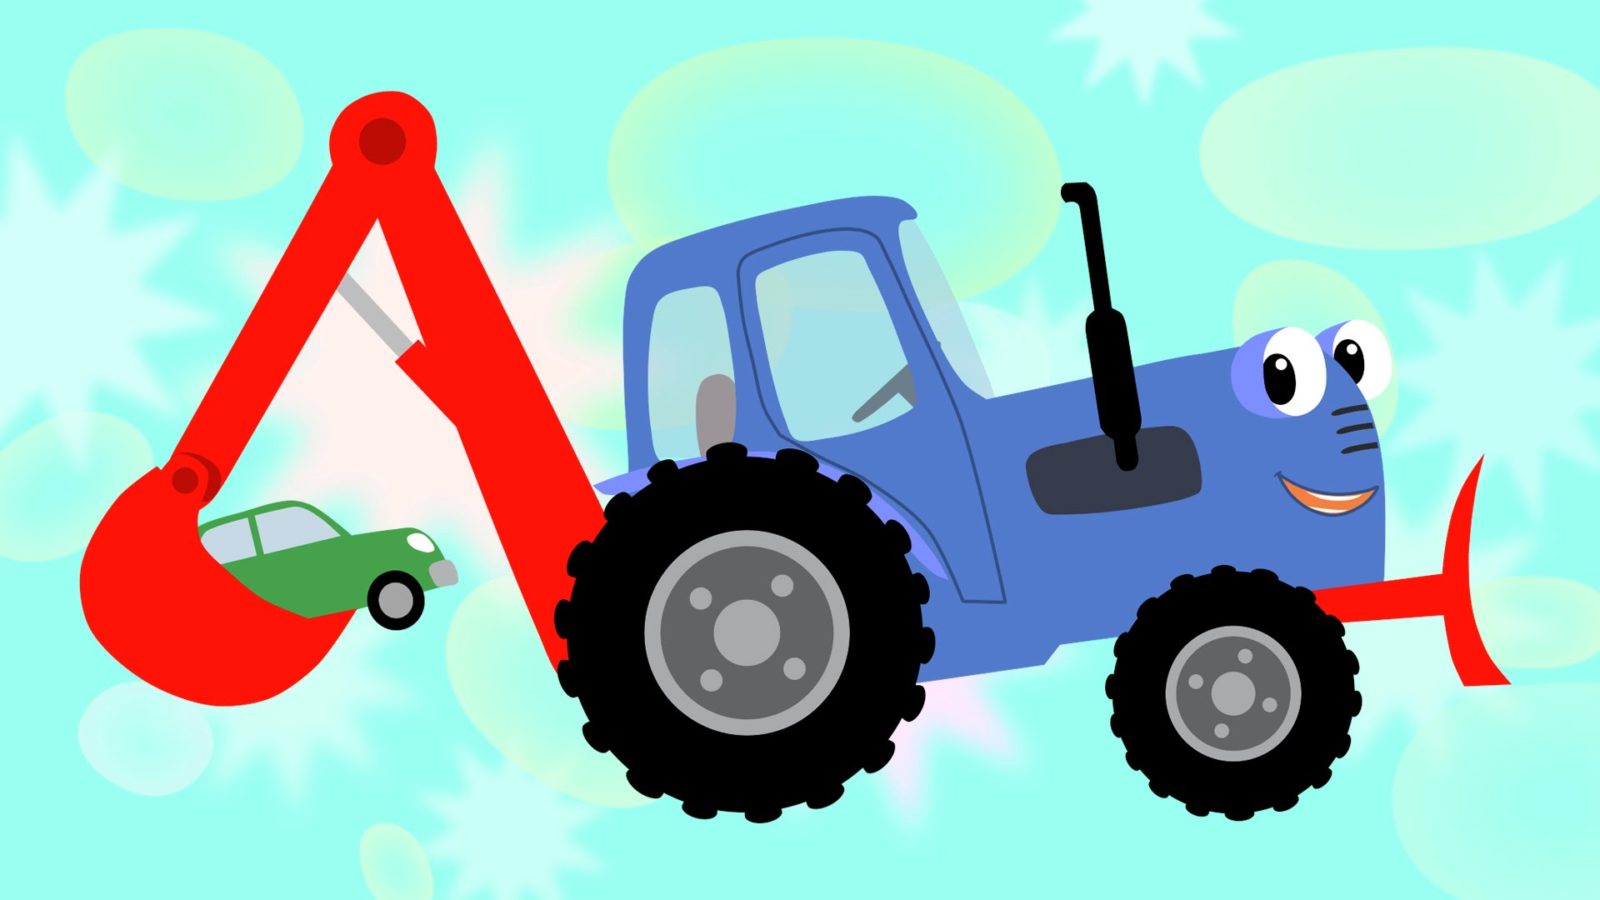 Синий трактор побыстрей. Синий трактор тр тр тр. Трактор Гоша трактор Гоша.